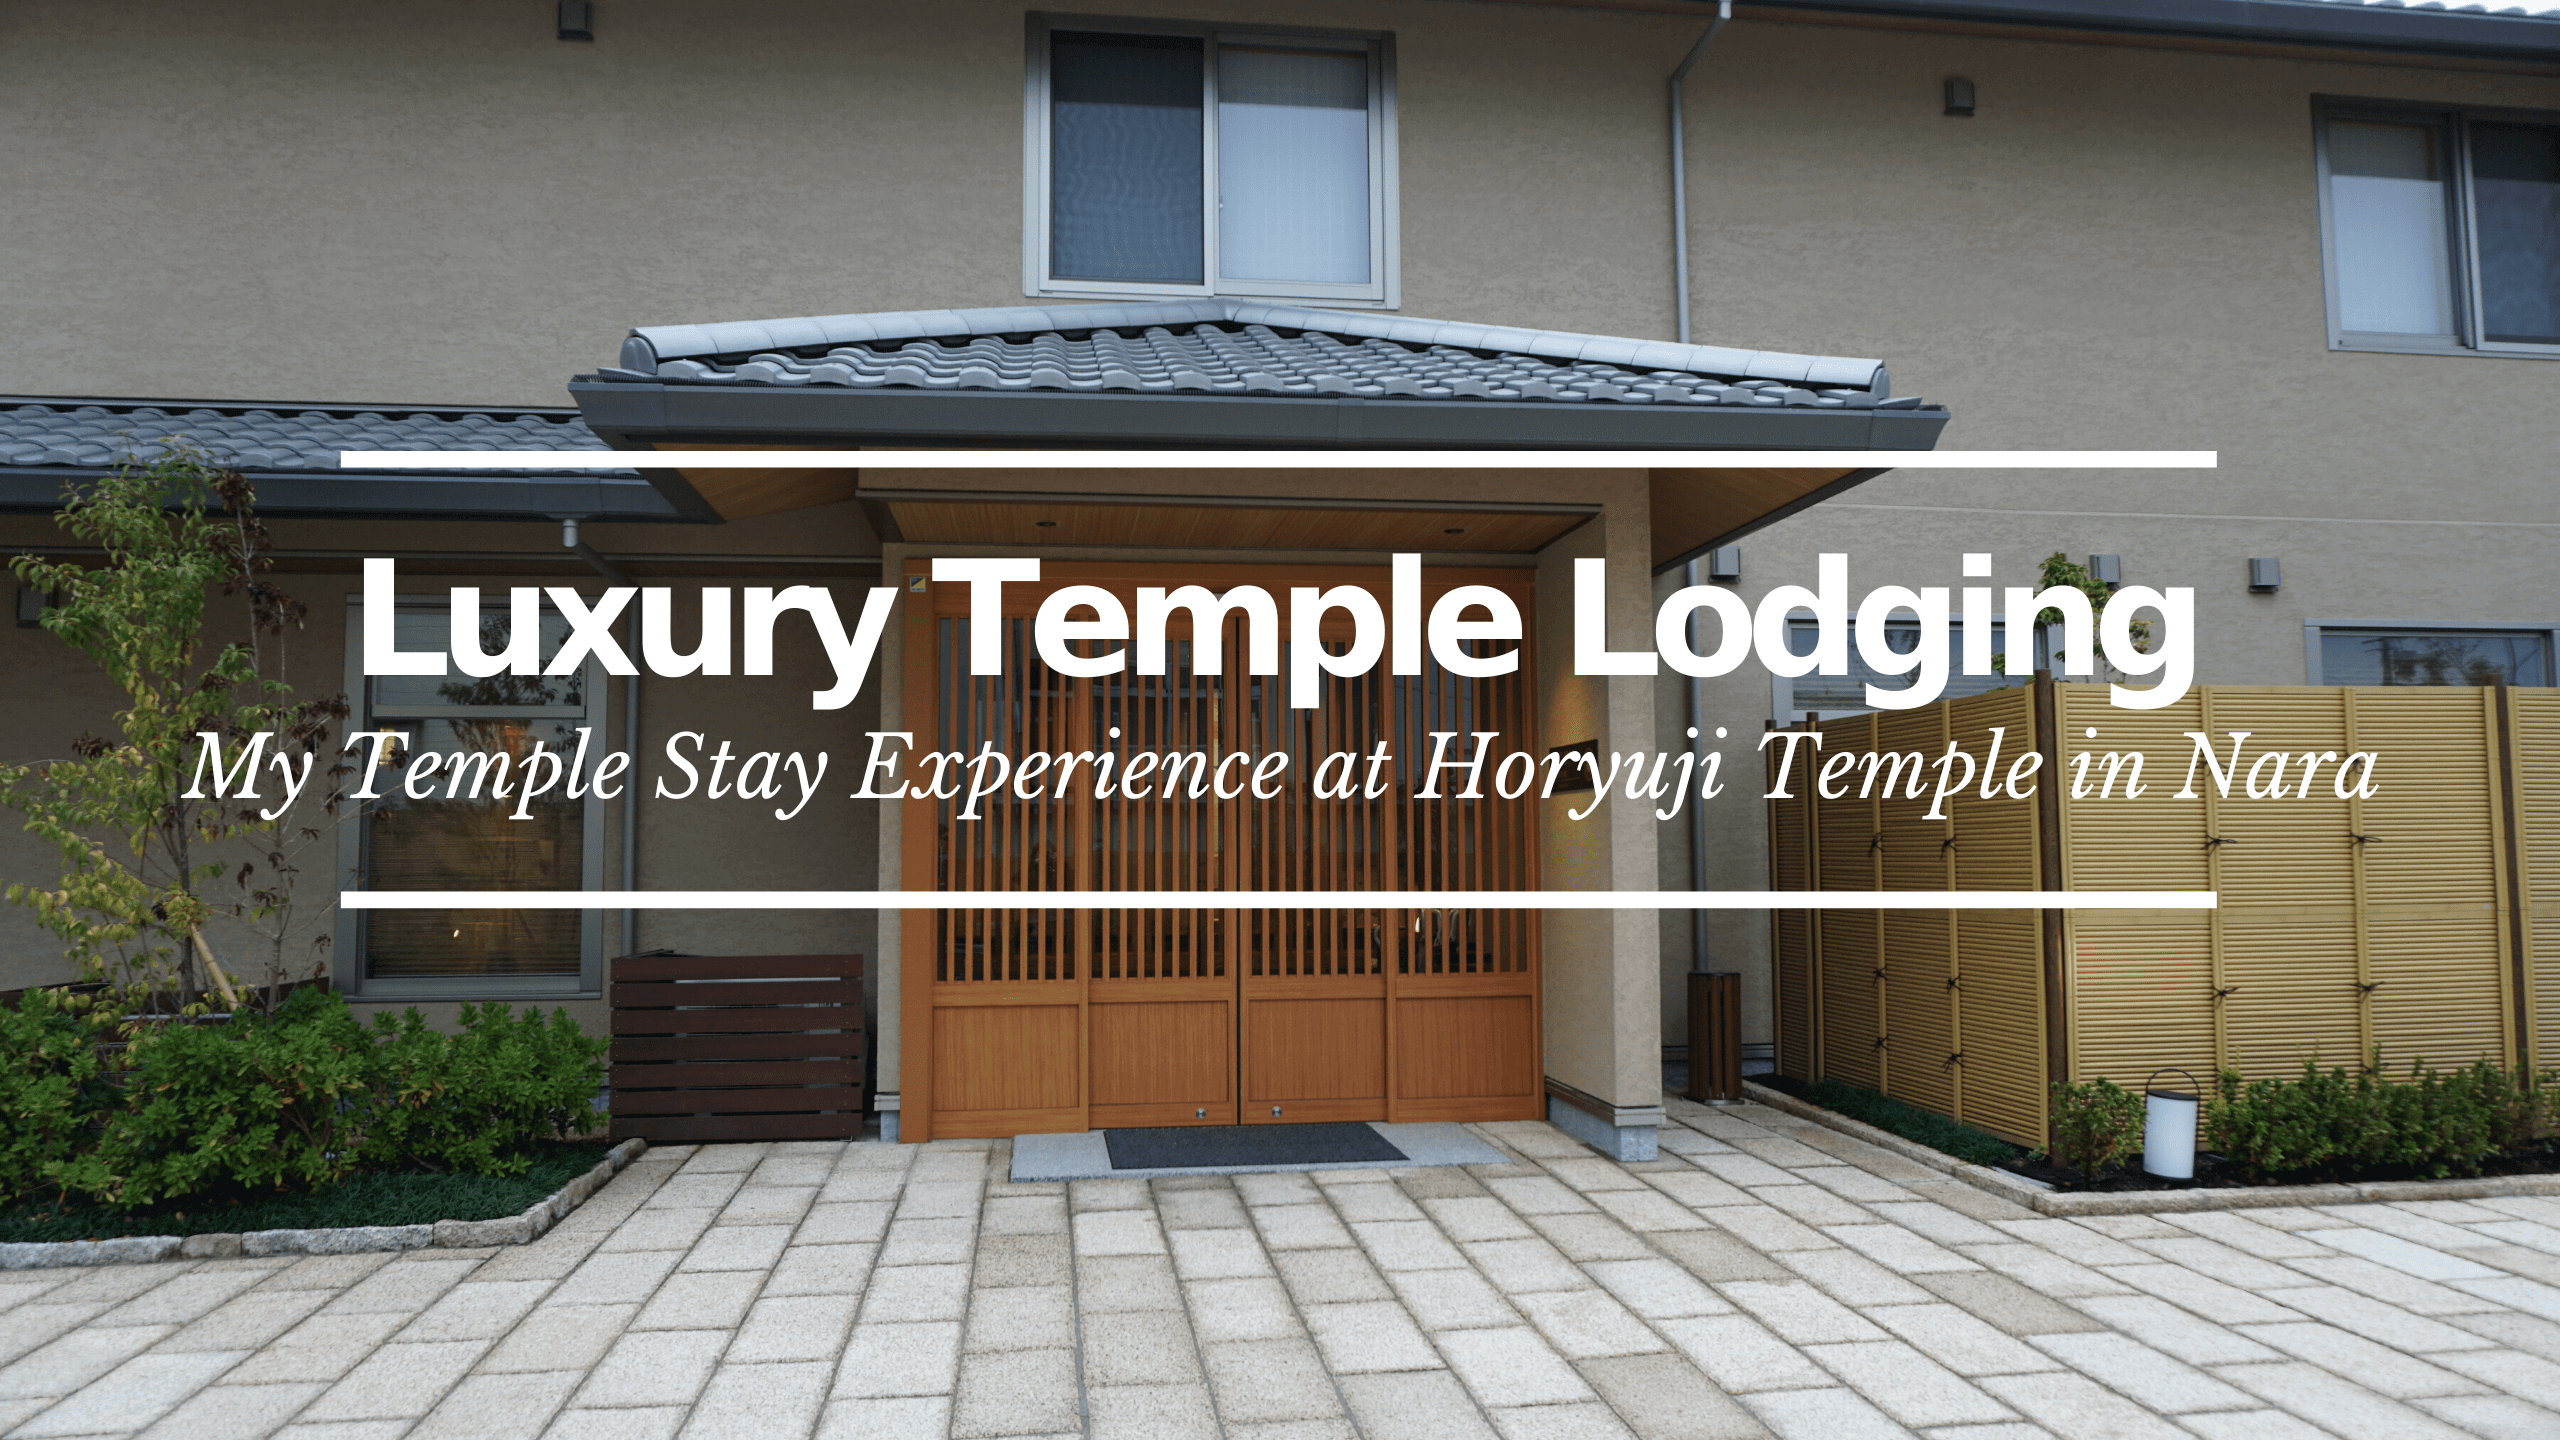 Luxury Temple Lodging at Horyuji Temple, Nara